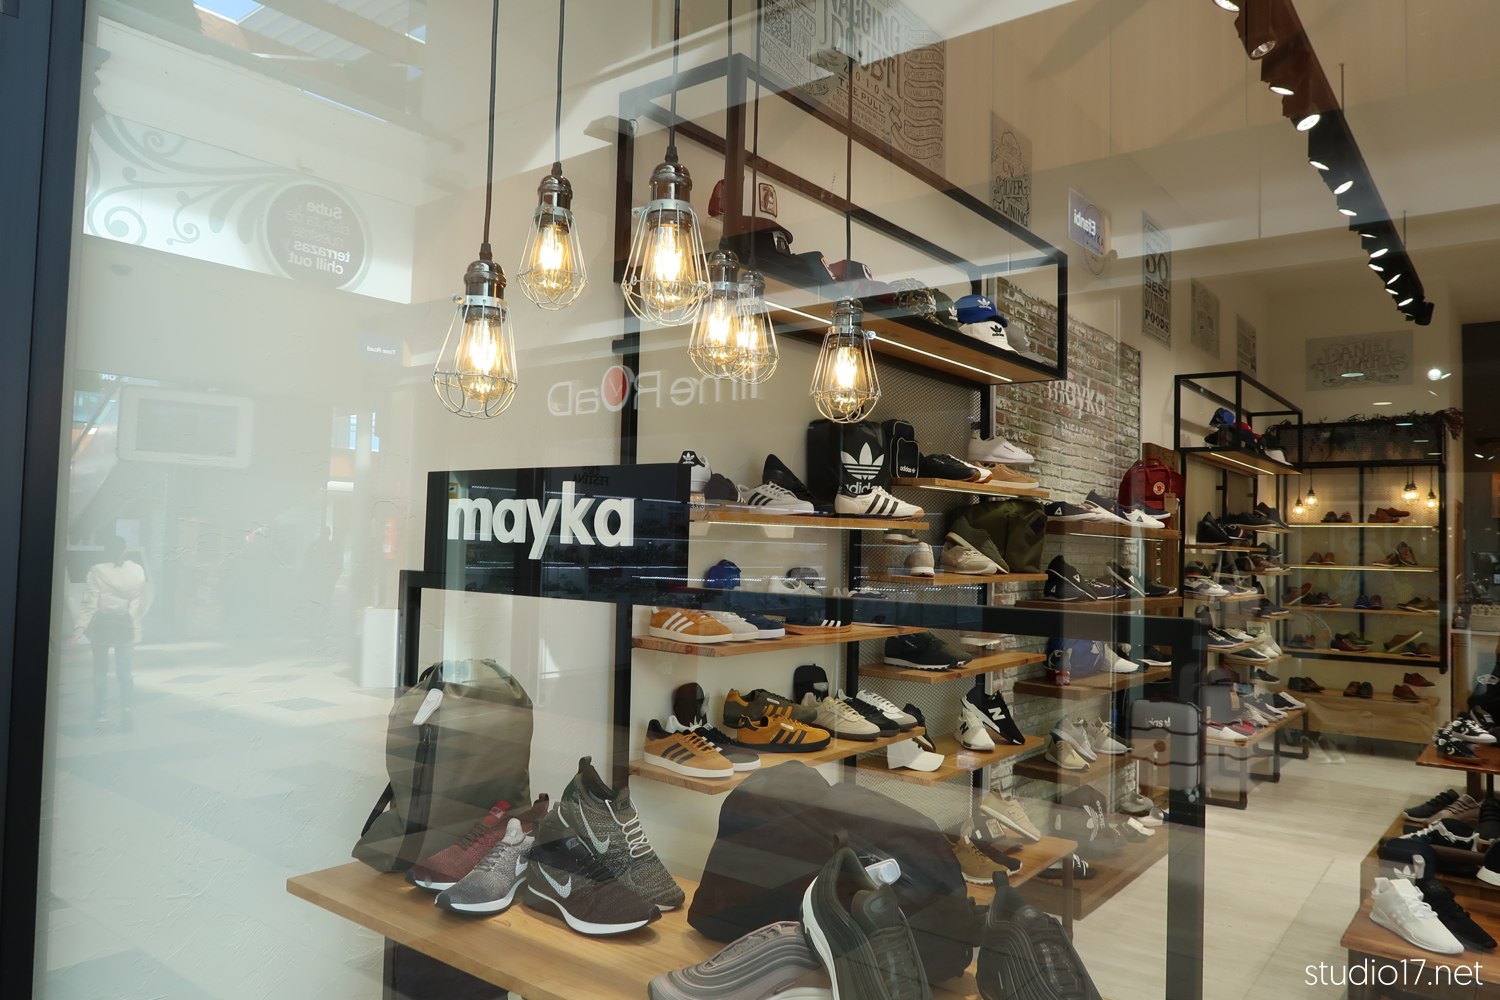 diseño retail-interiorismo comercial-mayka-studio17